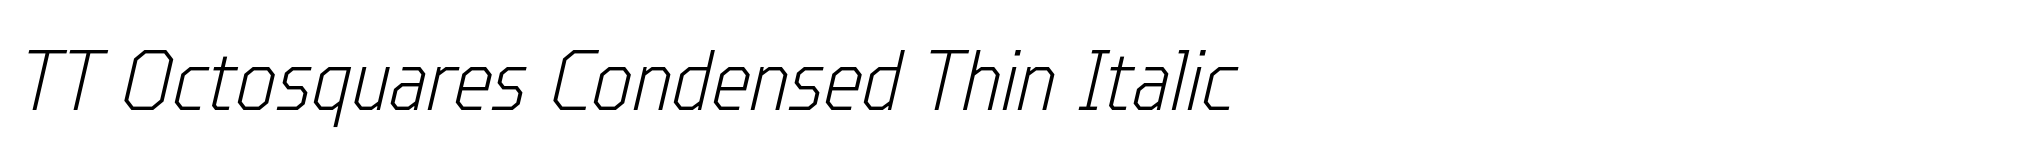 TT Octosquares Condensed Thin Italic image